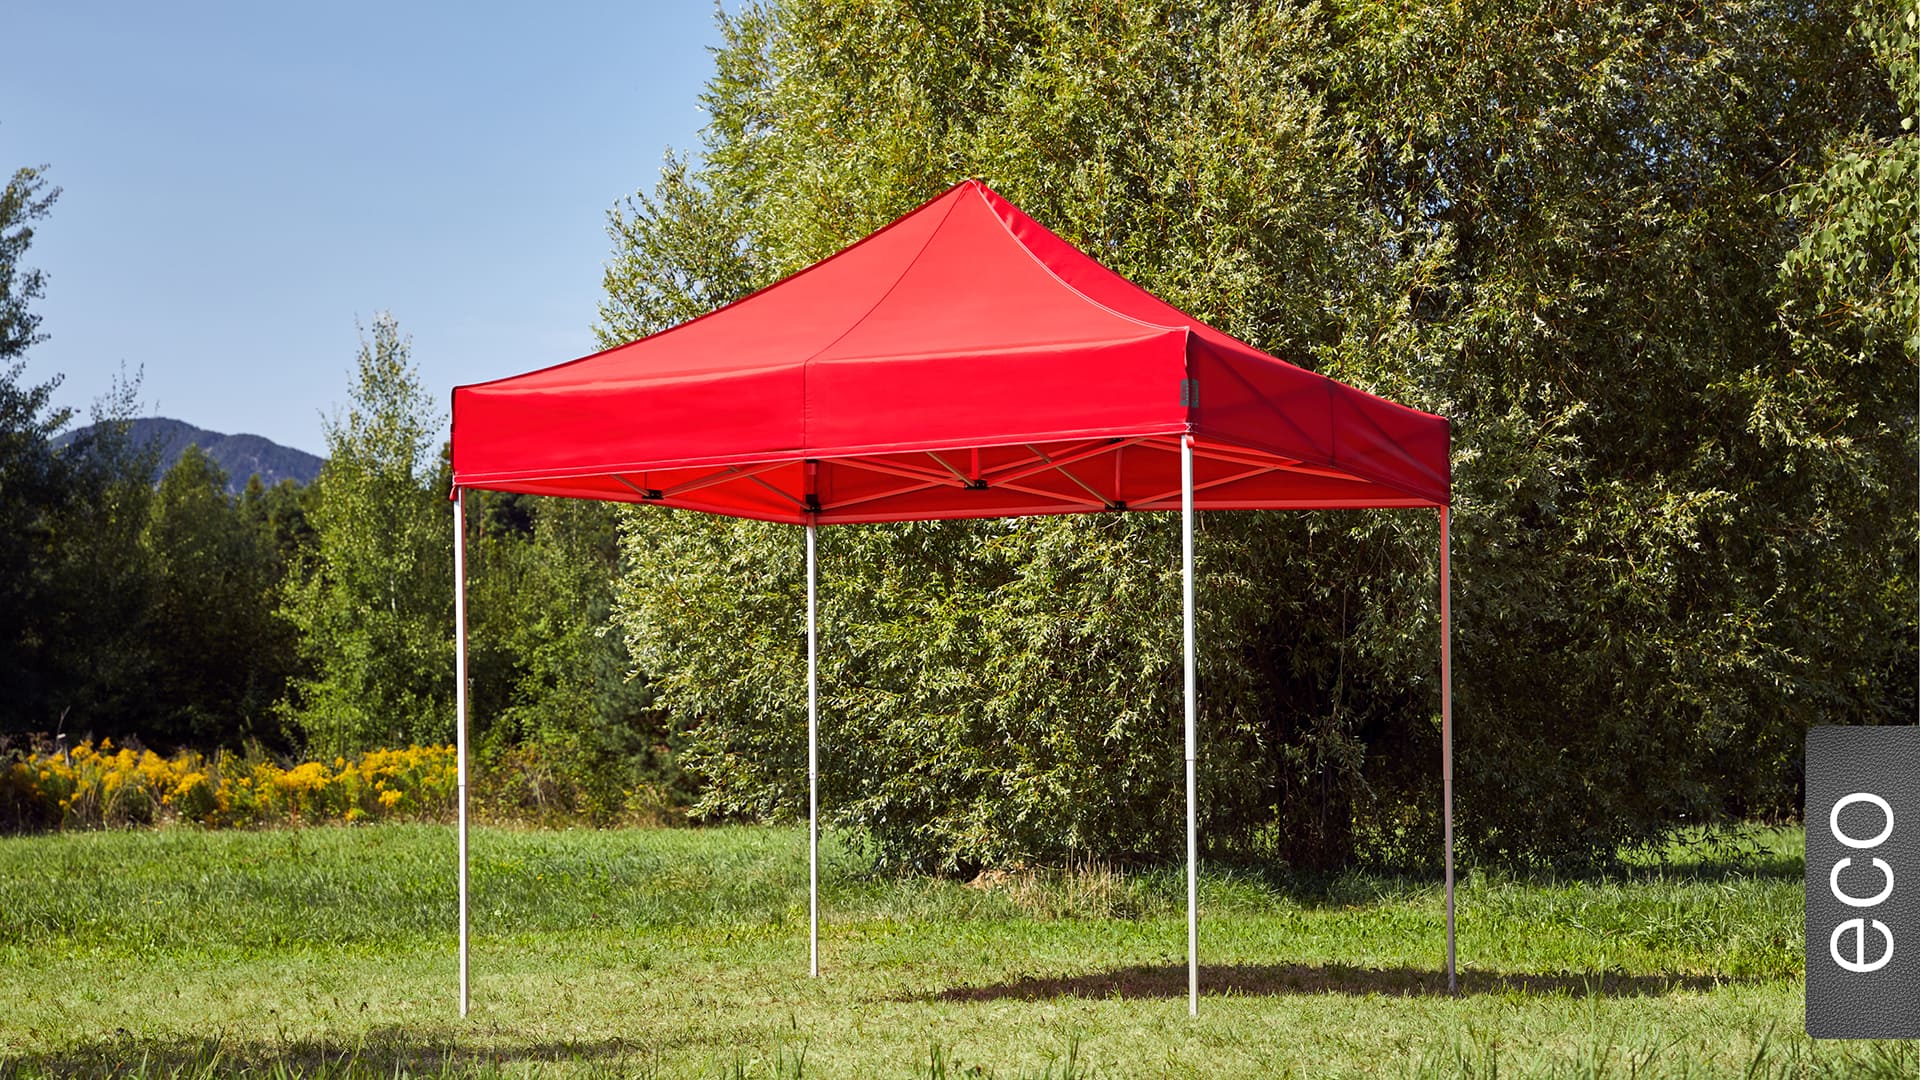 Der 3x3 Faltpavillon der Produktlinie eco mit einem roten Dach aufgestellt im Garten.